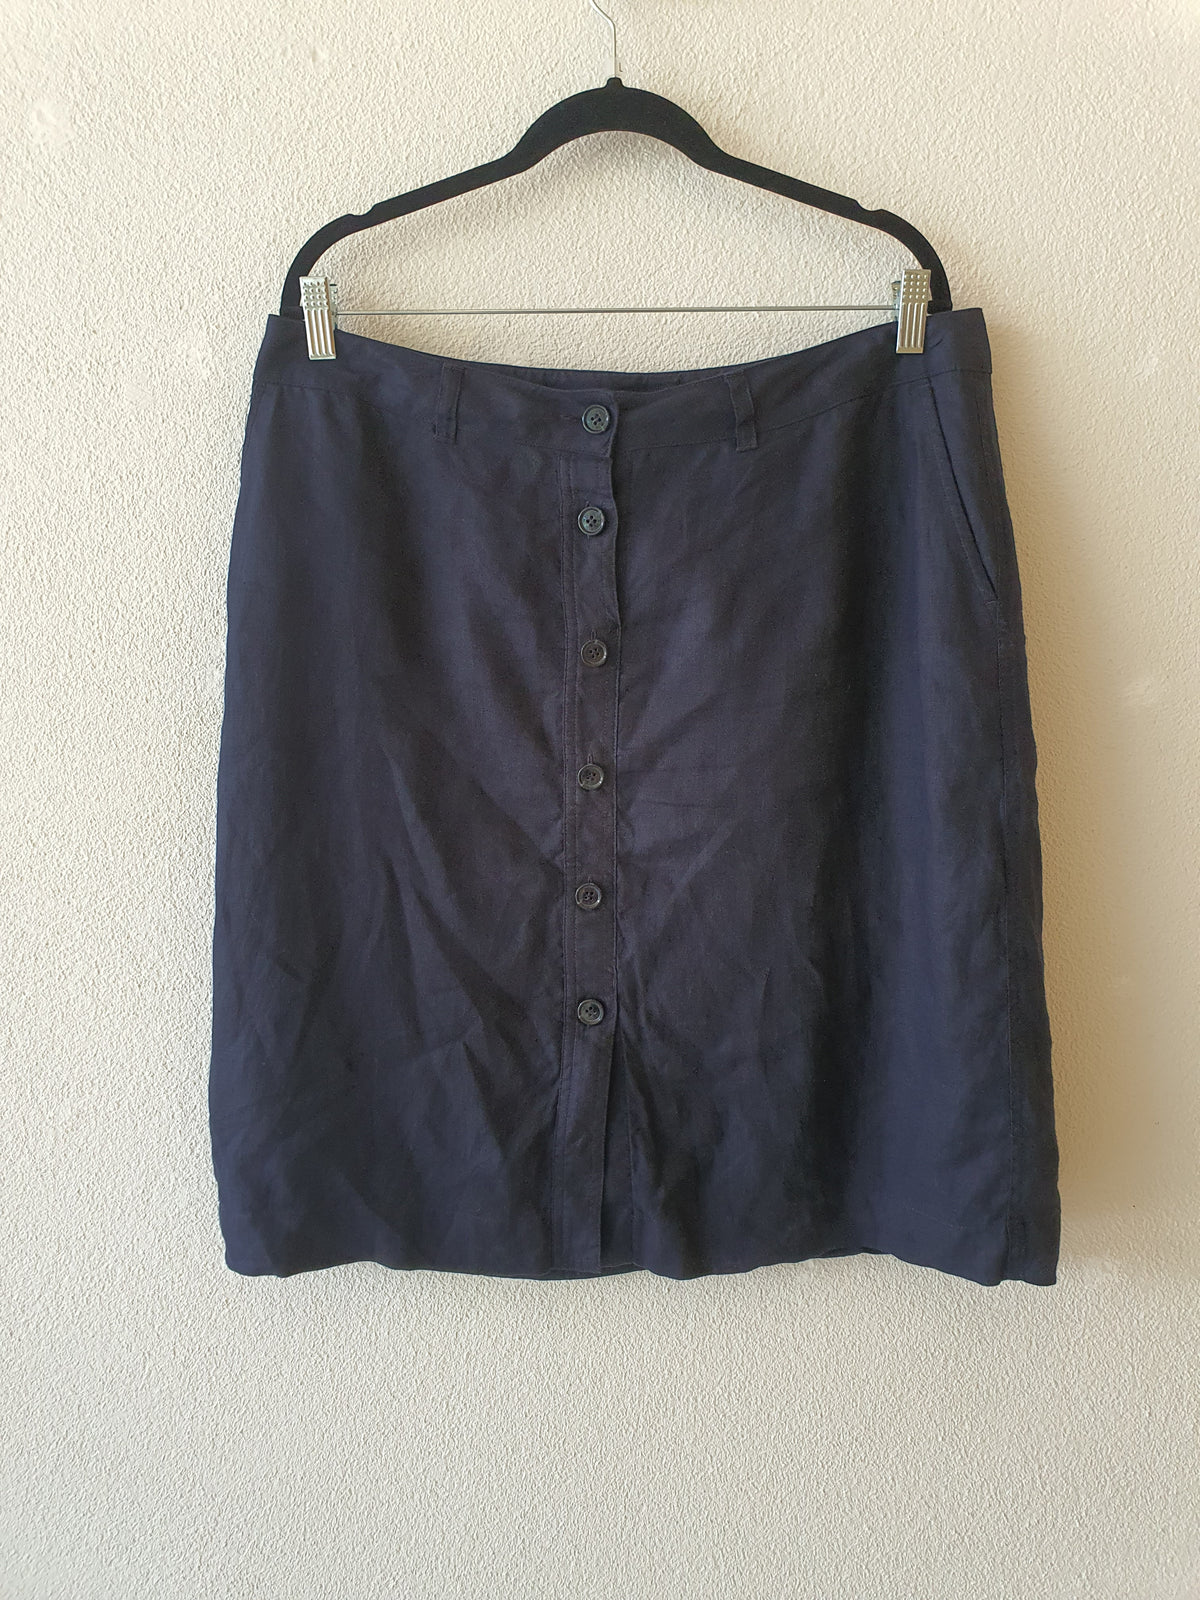 SportsCraft Navy Linen button front skirt 14